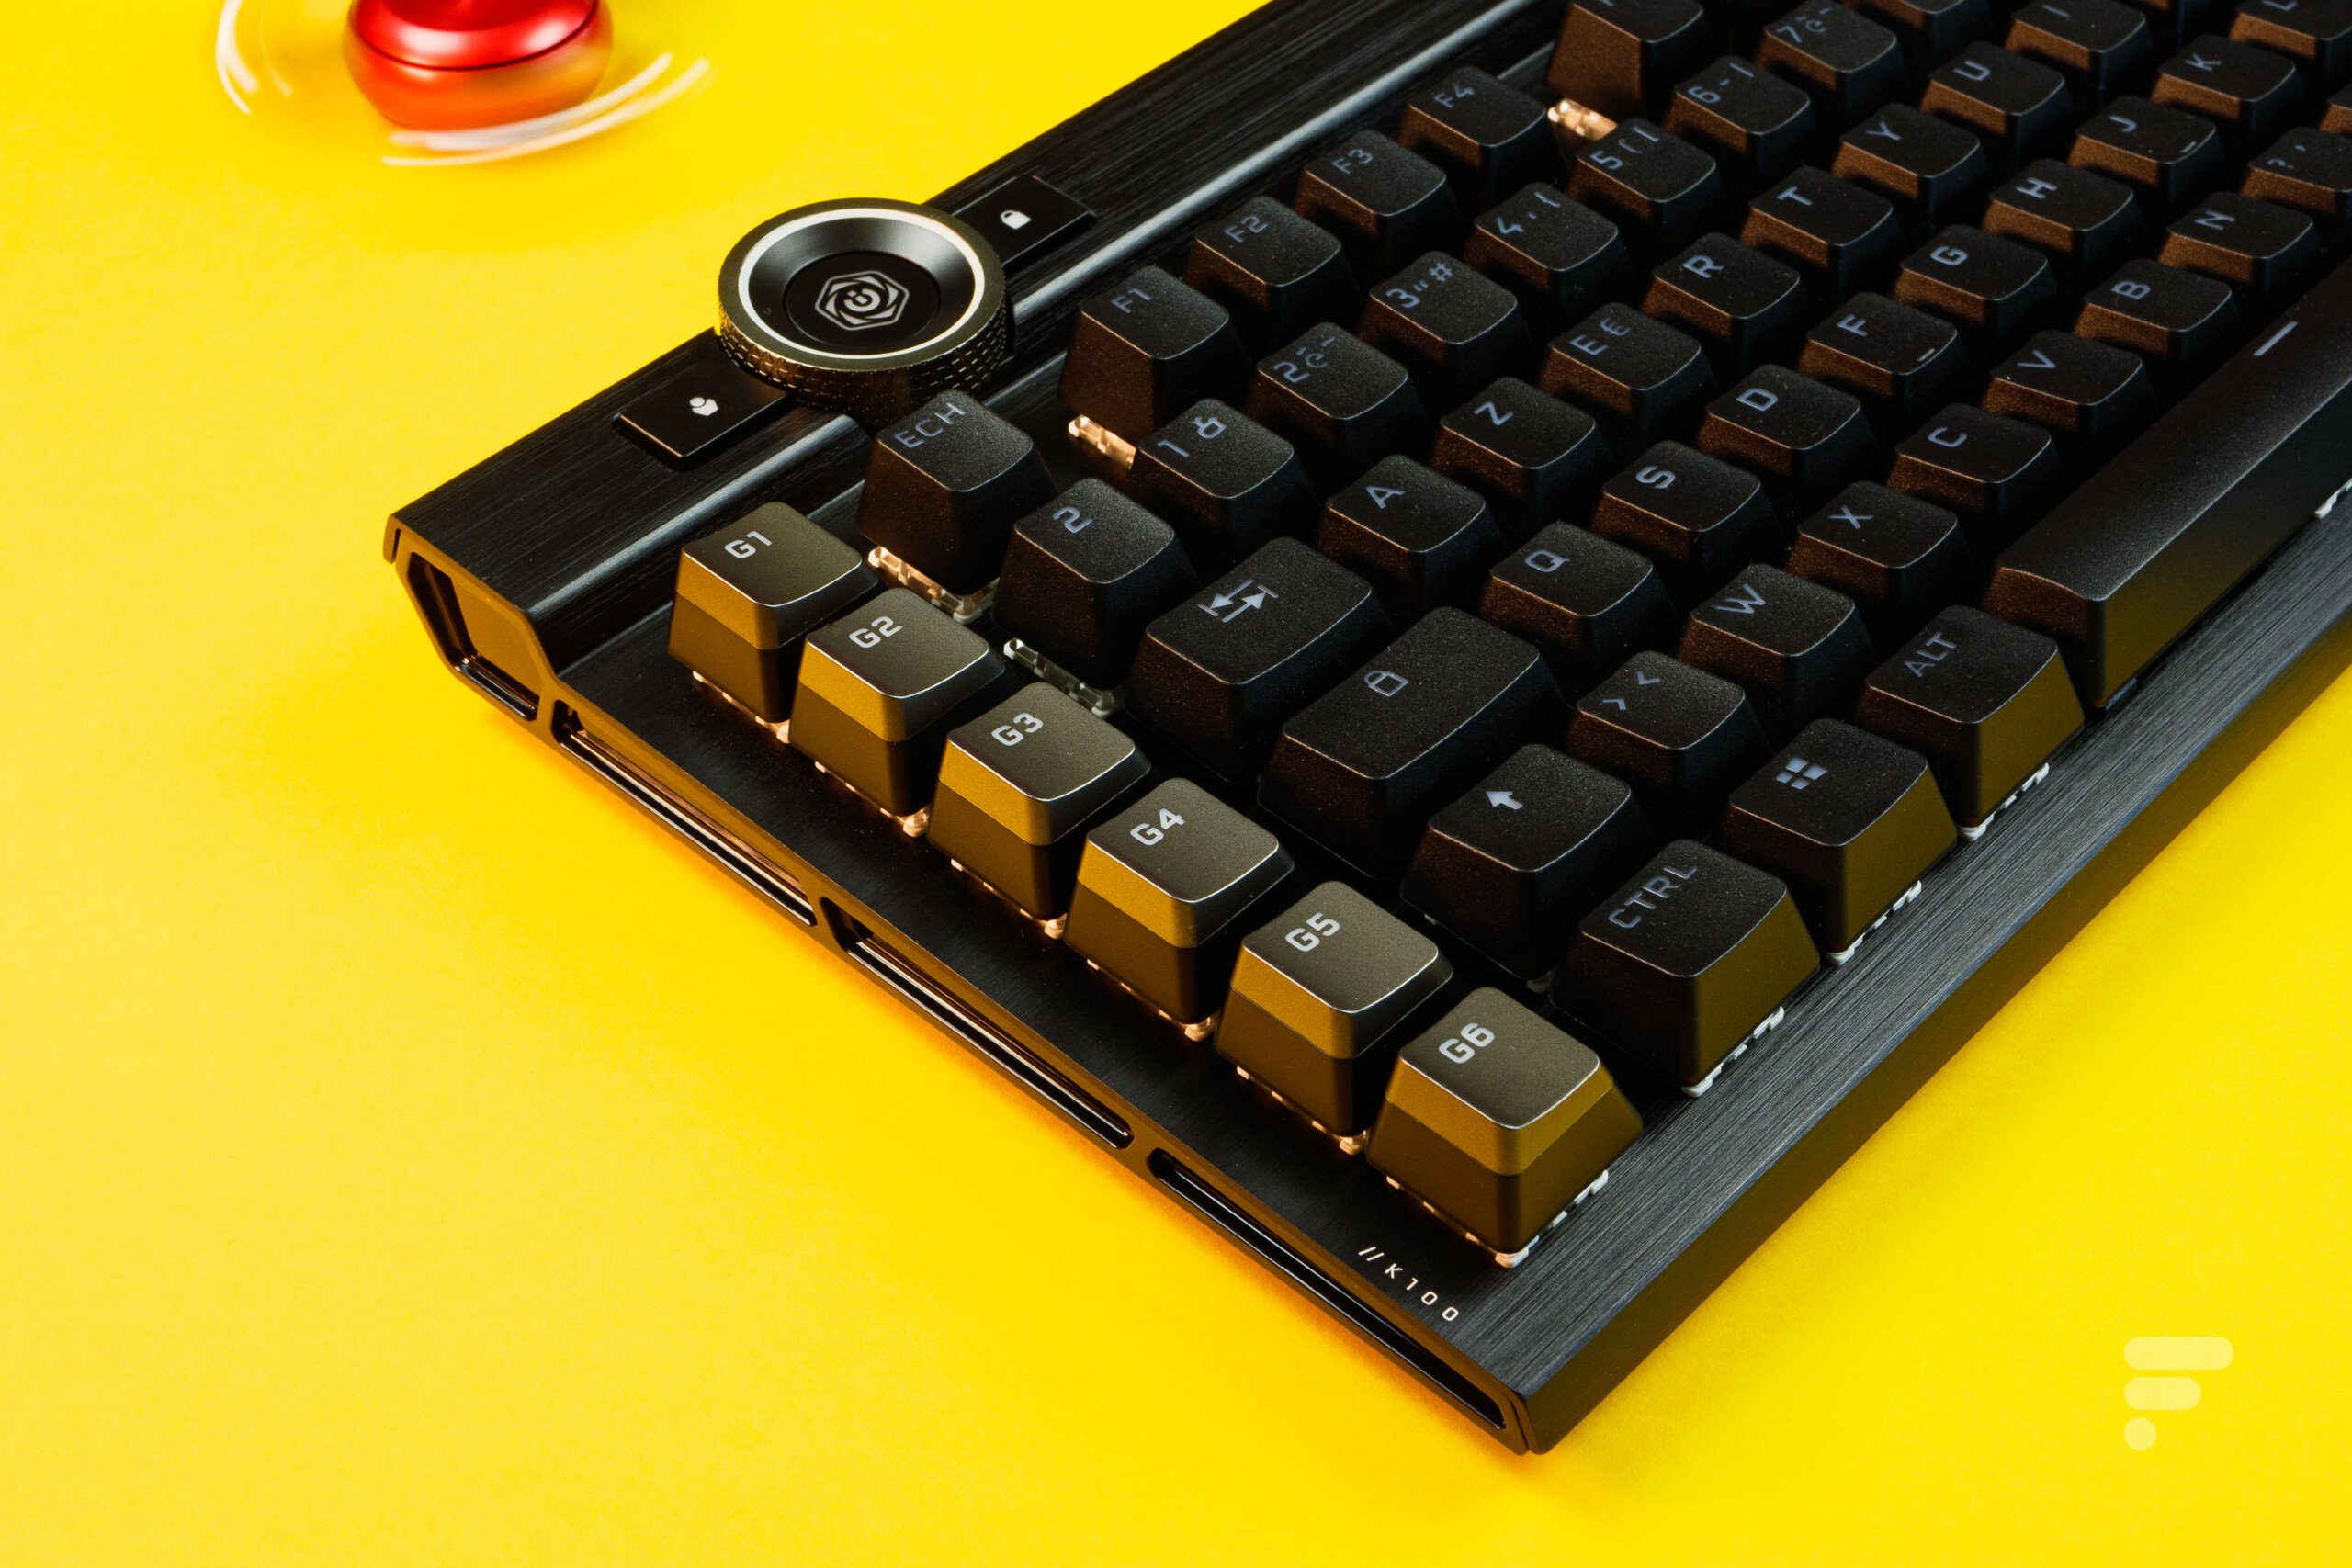 Comment bien choisir son clavier et sa souris gamer ?